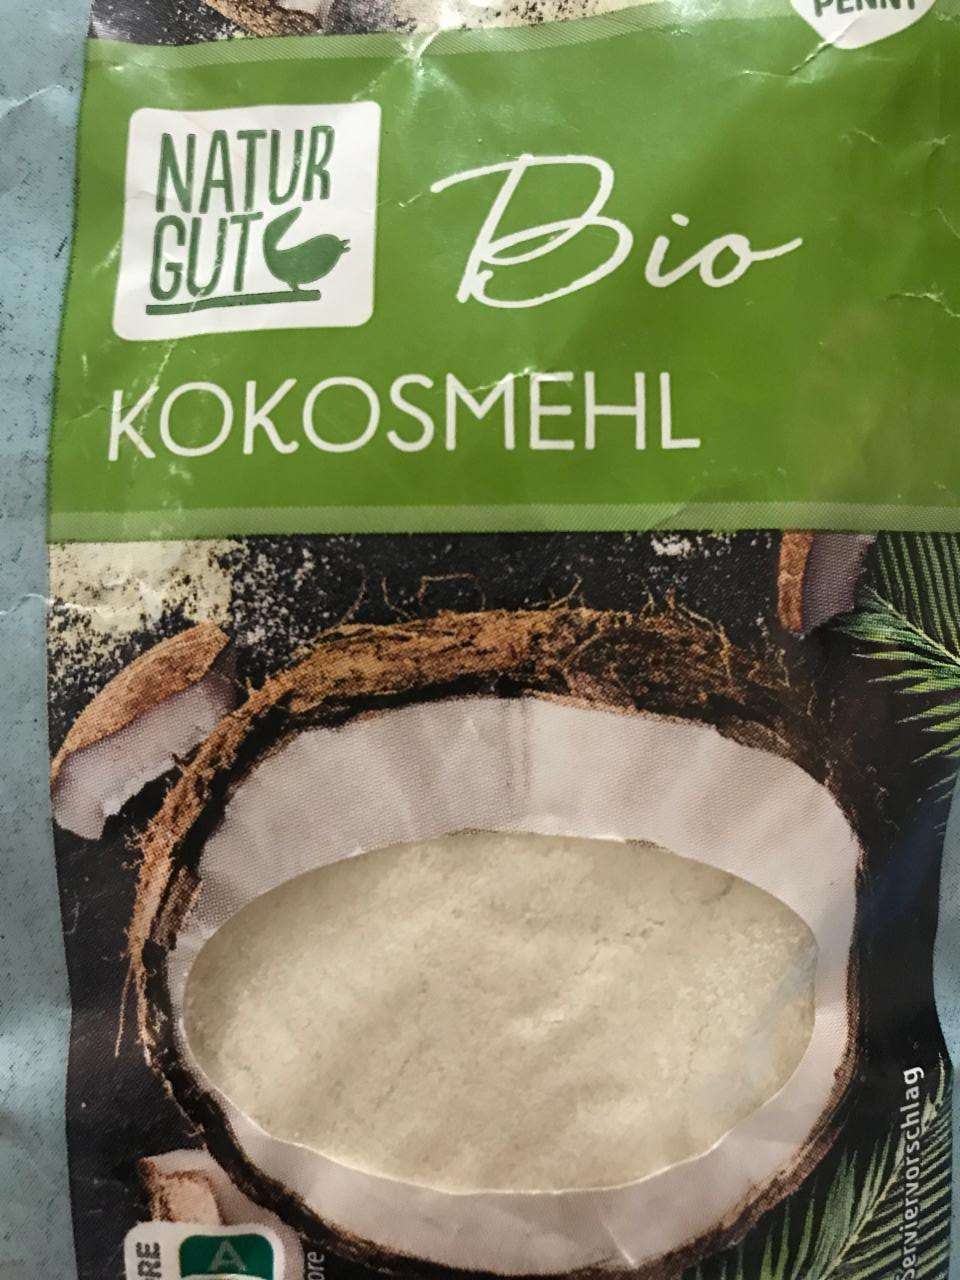 Фото - Борошно кокосове Bio Kokosmehl Natur Gut